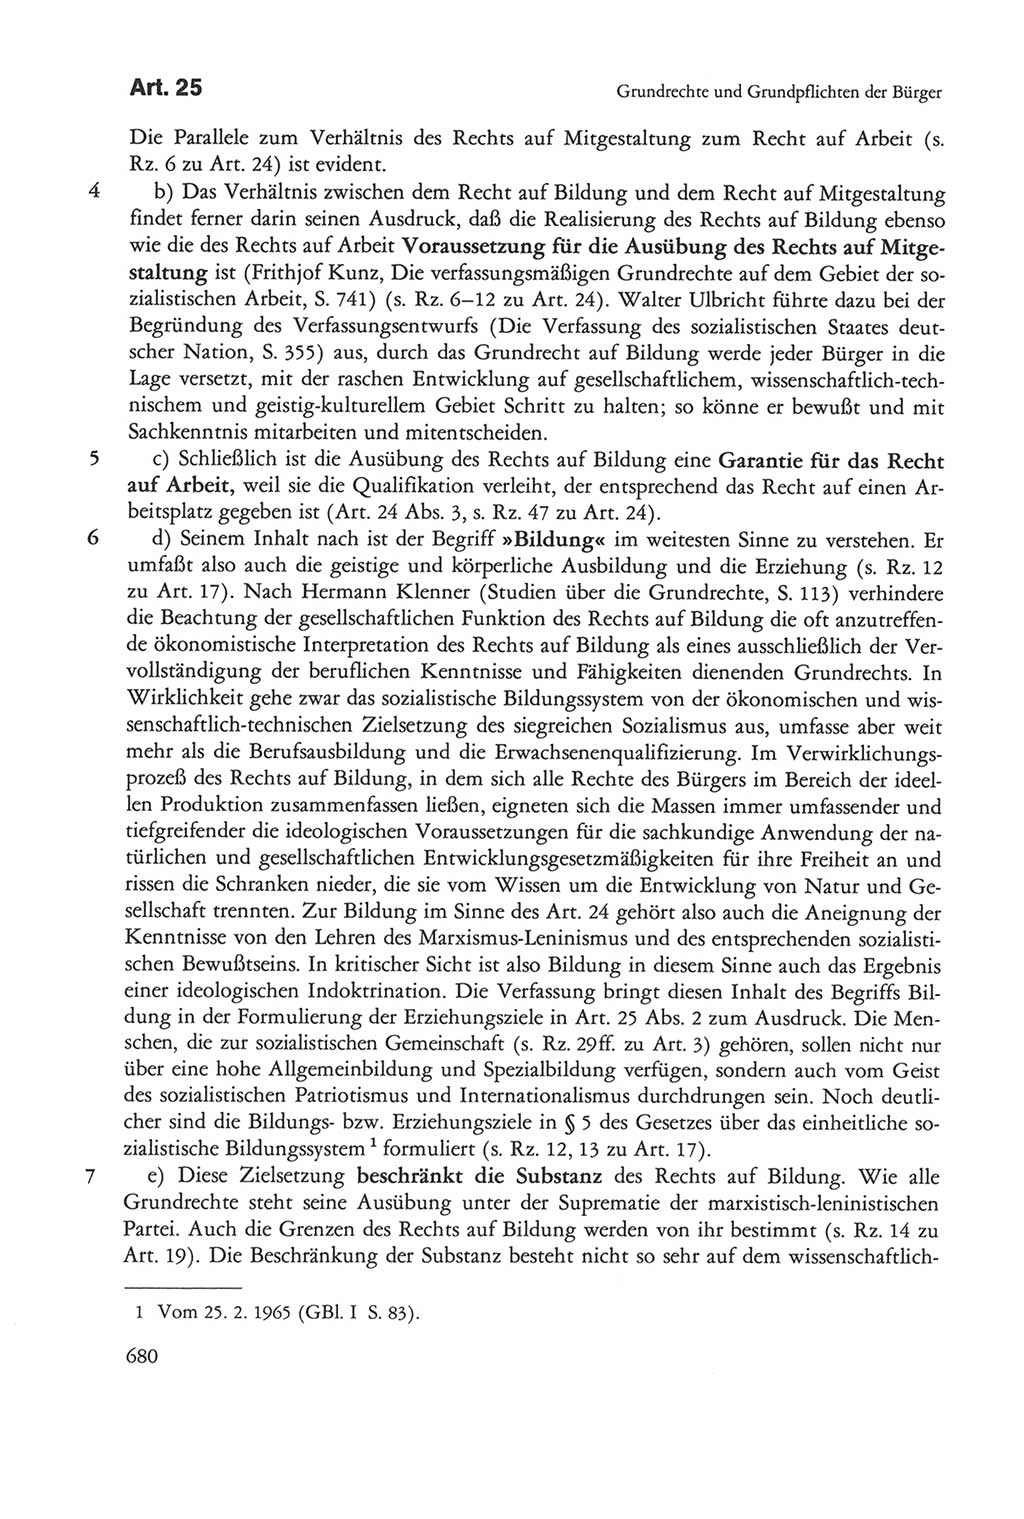 Die sozialistische Verfassung der Deutschen Demokratischen Republik (DDR), Kommentar 1982, Seite 680 (Soz. Verf. DDR Komm. 1982, S. 680)